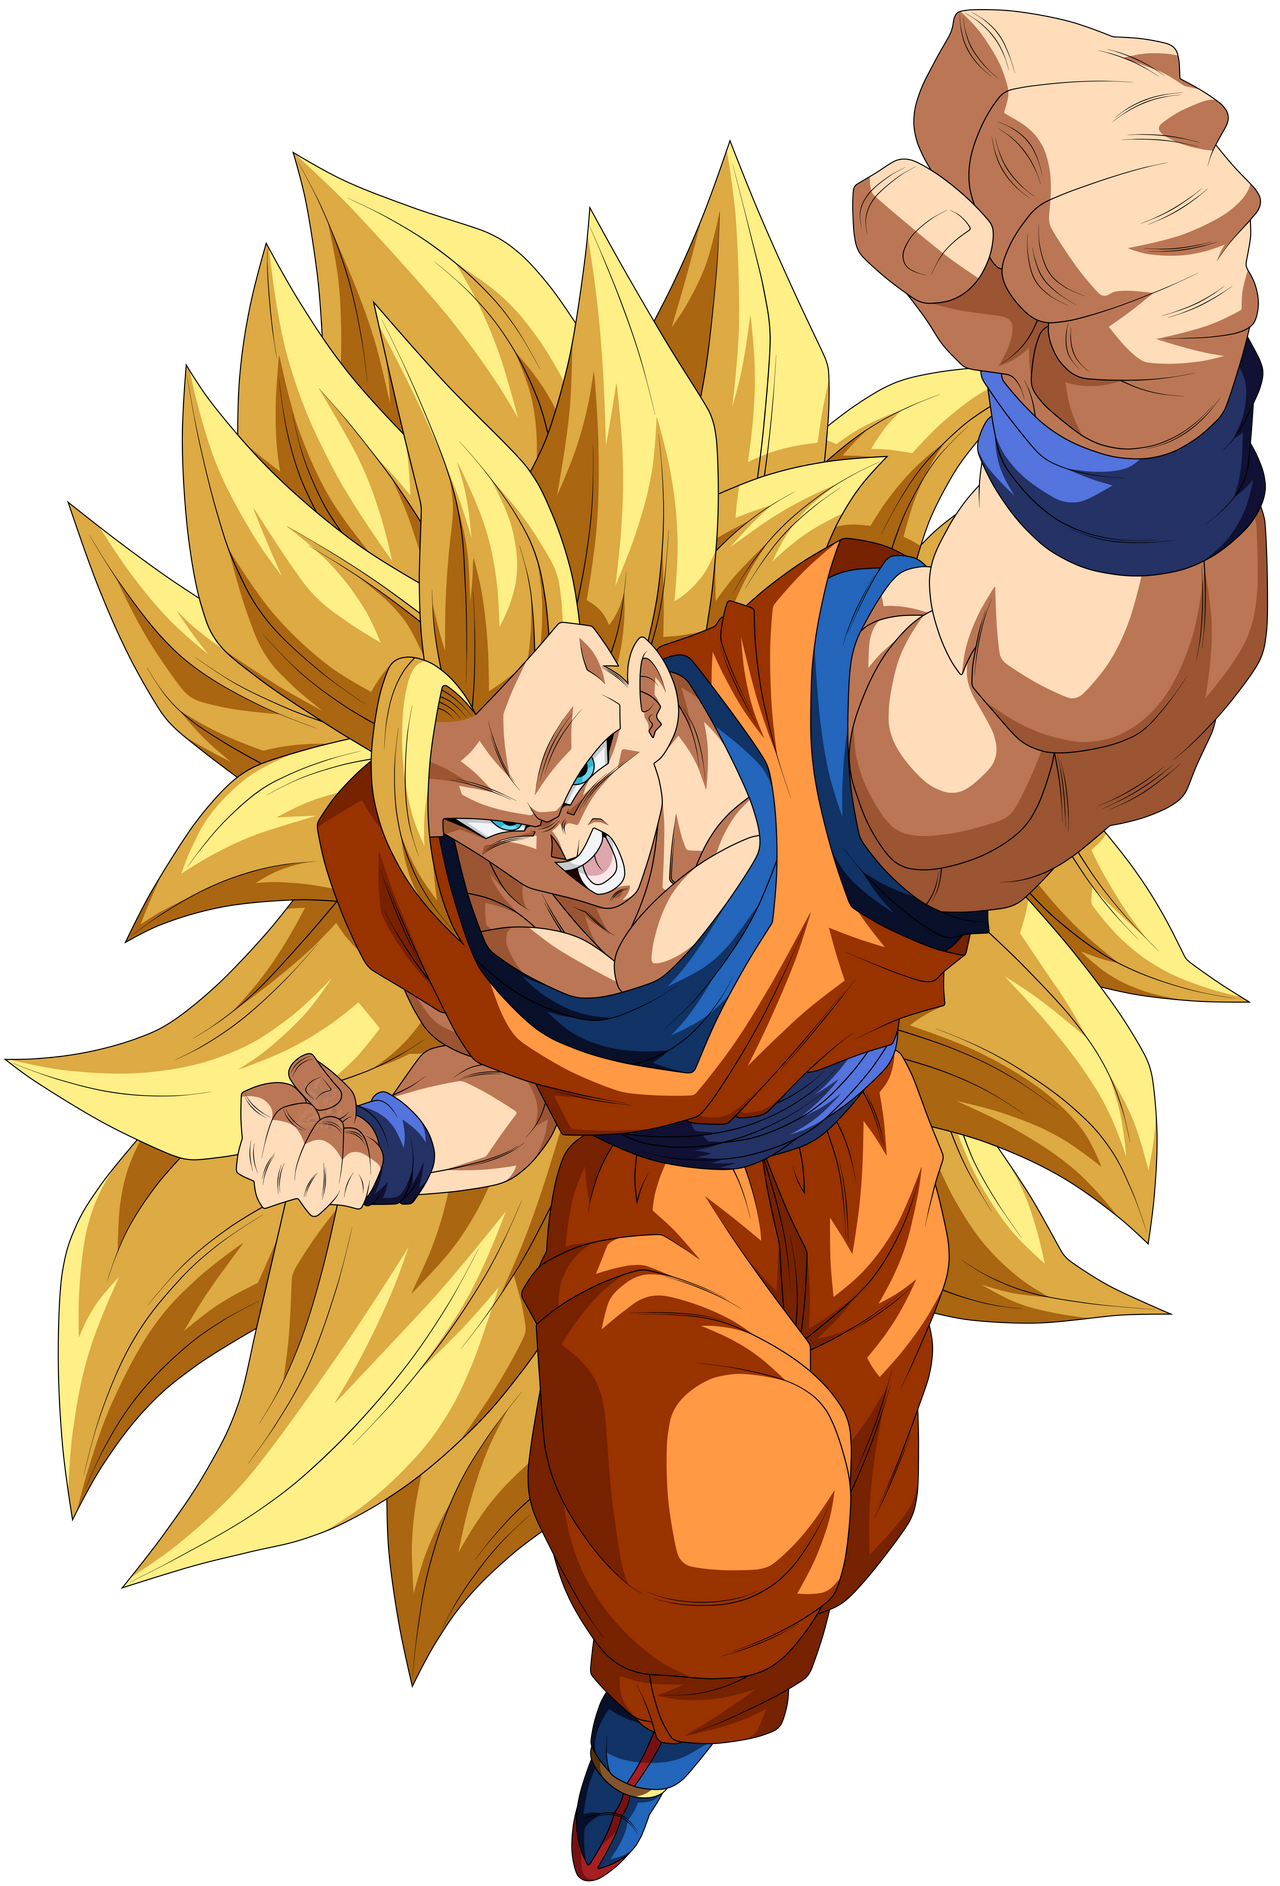 Goku Super Saiyajin 3 by HiroshiIanabaModder on DeviantArt